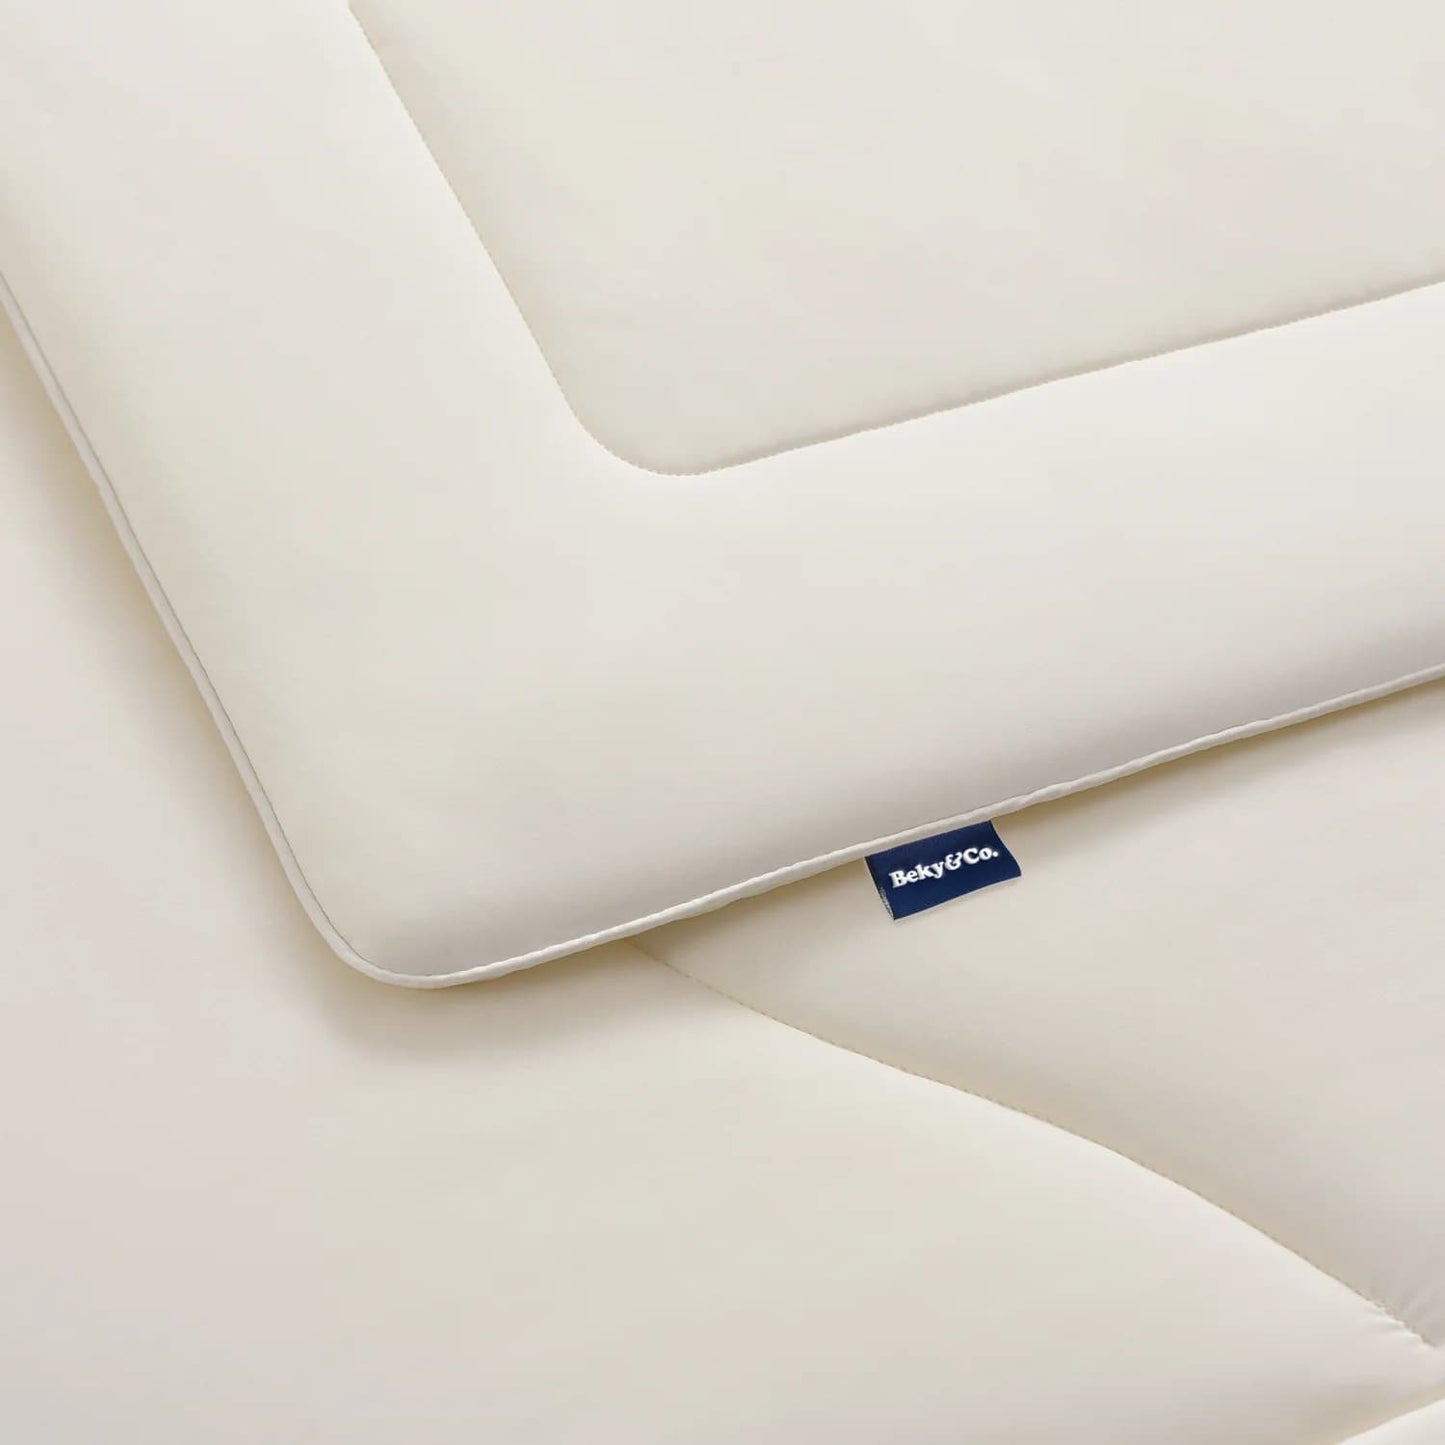 Fluff® Cooling Comforter